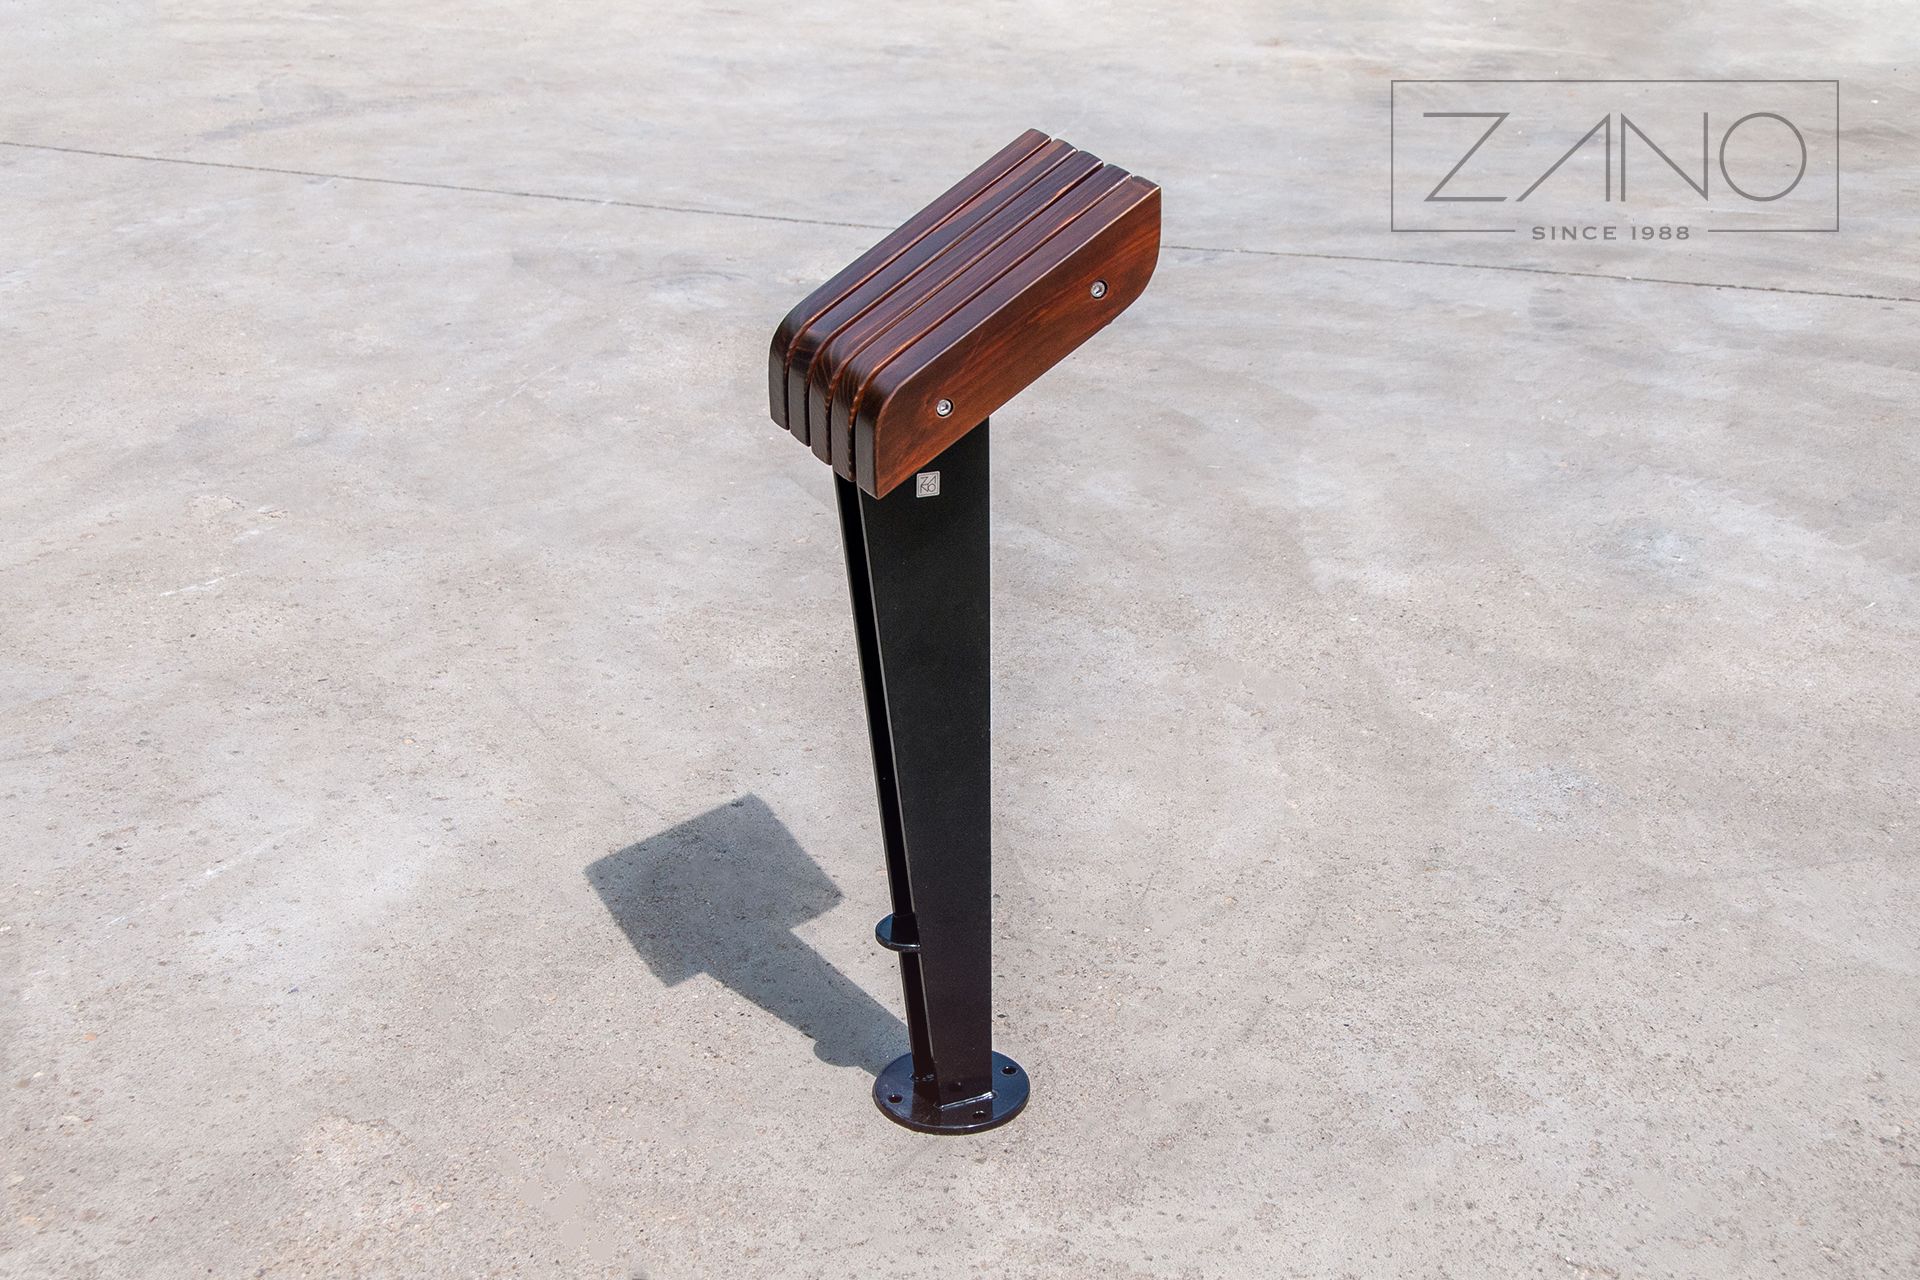 Spocznik Enkel - ławka dla przystanku autobusowego